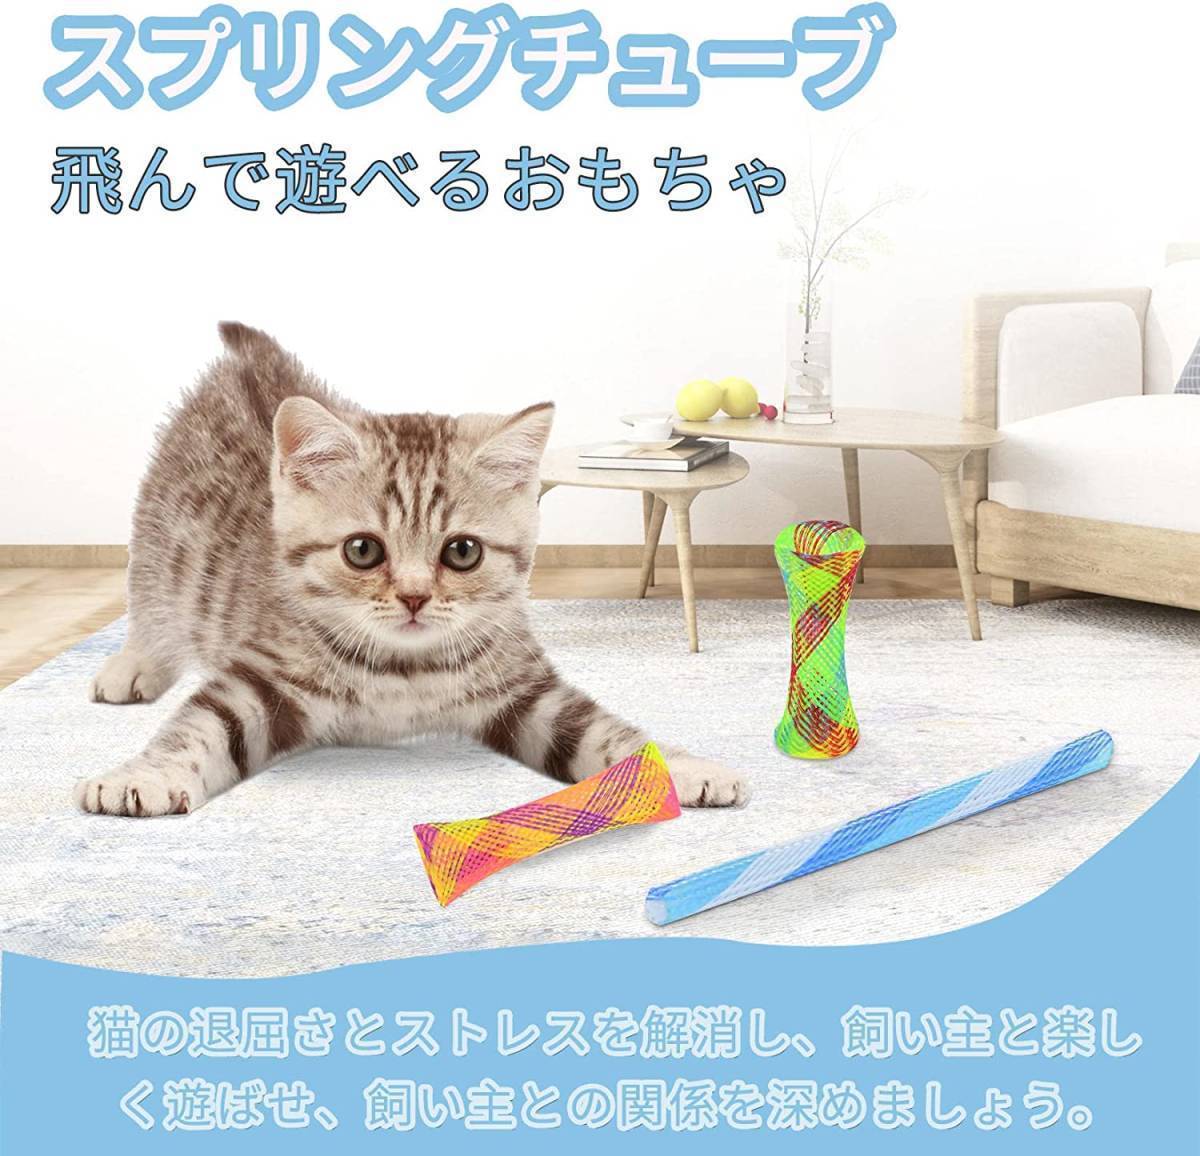 送料無料 猫 おもちゃ スプリング 10個セット 5色 バネチューブ バウンス玩具 ばねおもちゃ 跳ねる 猫遊び用 ペット おもちゃ 新品_画像5